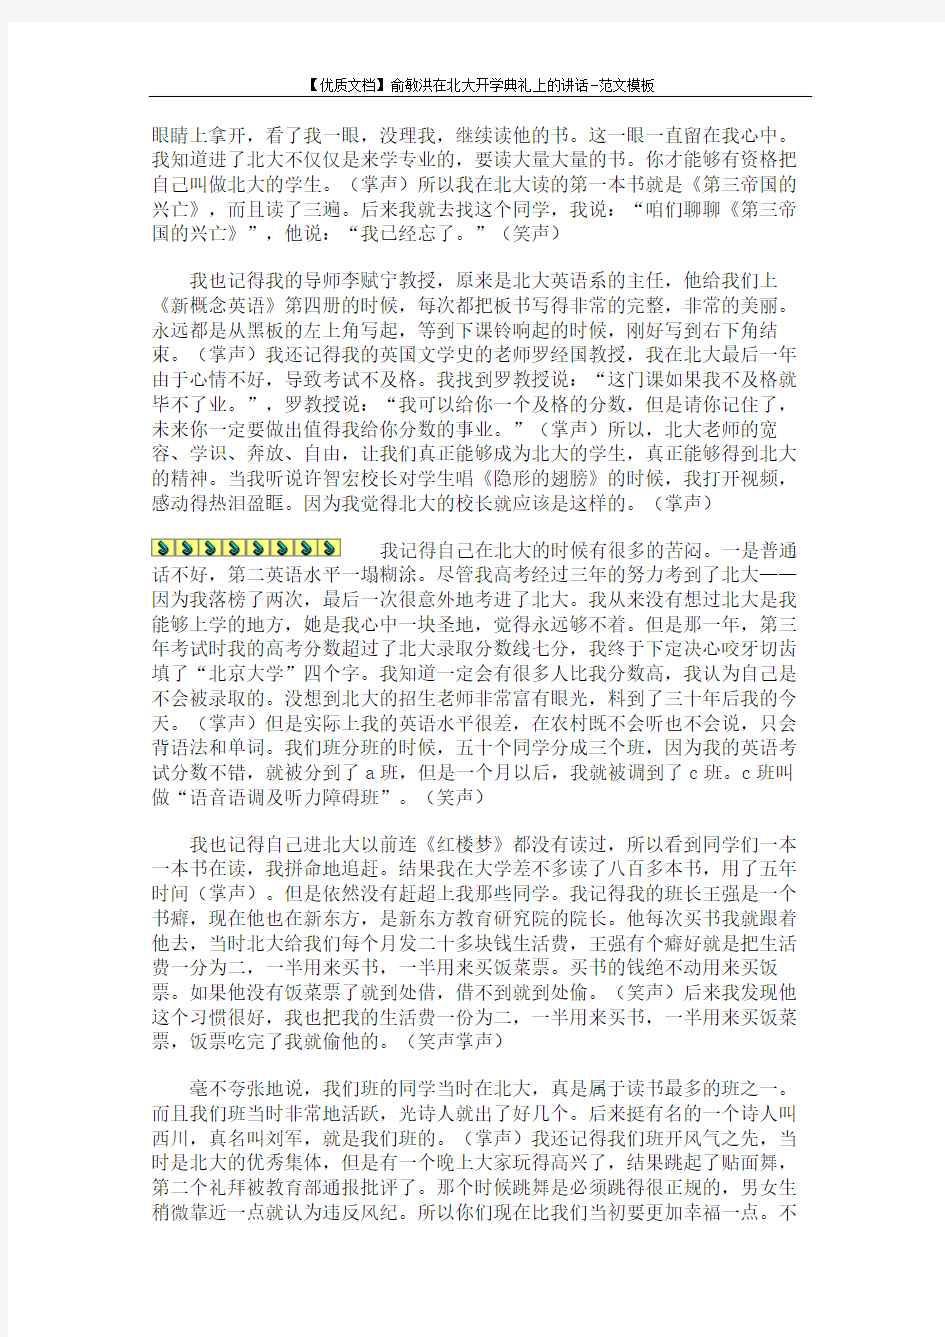 【优质文档】俞敏洪在北大开学典礼上的讲话-范文模板 (5页)